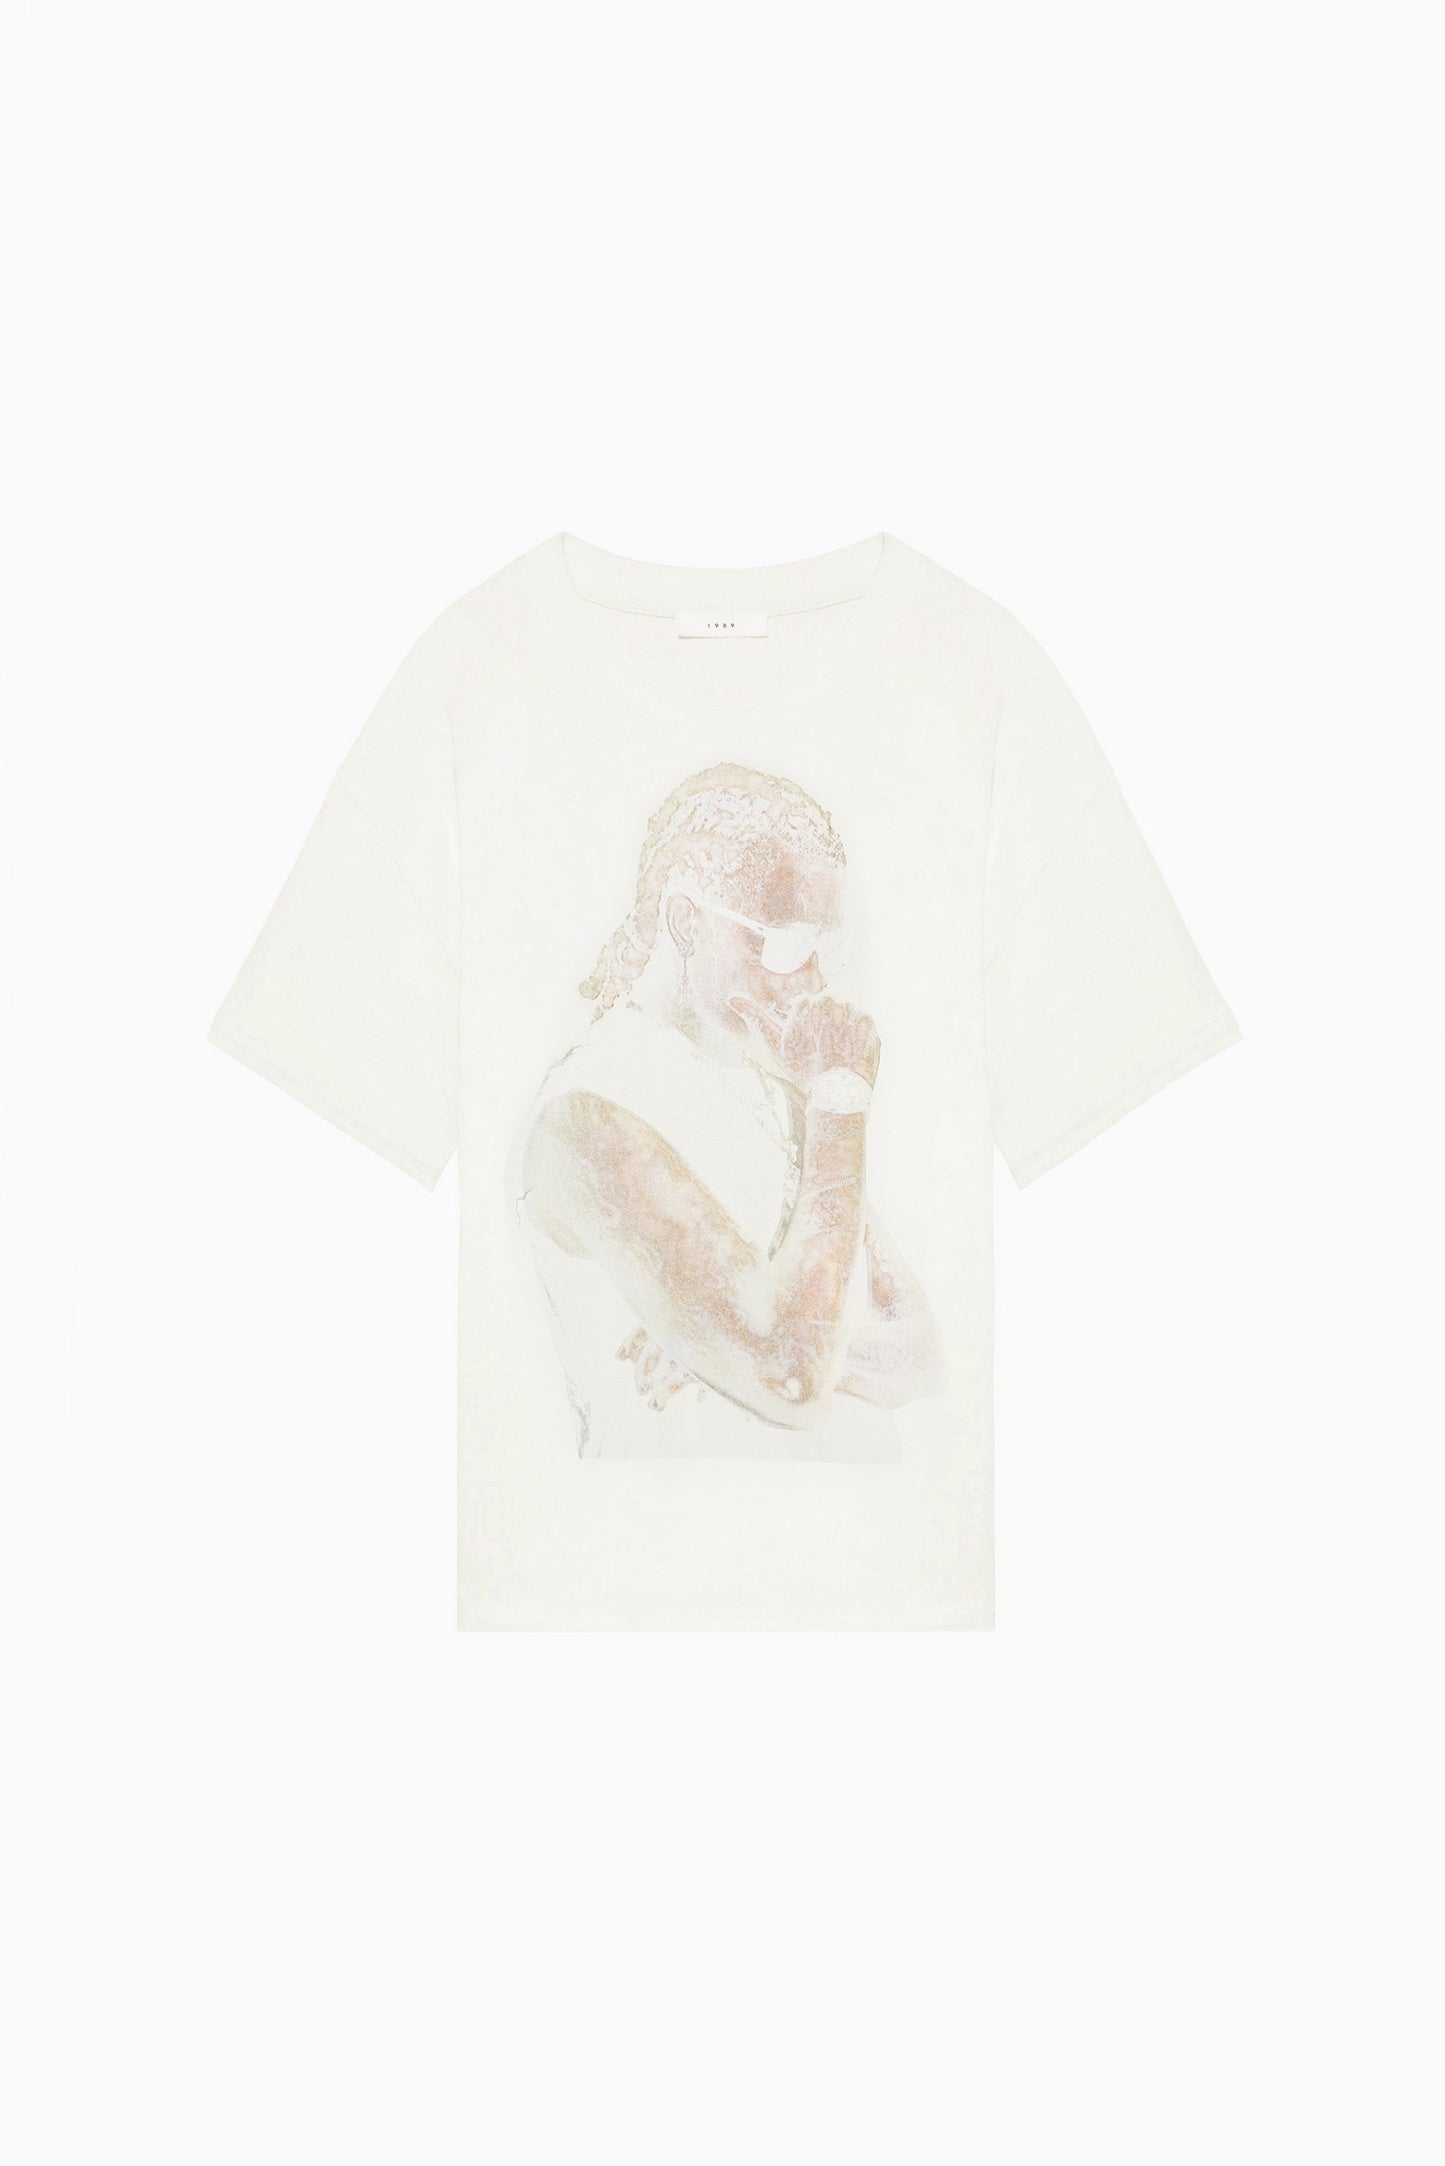 Woman's Slime T-Shirt